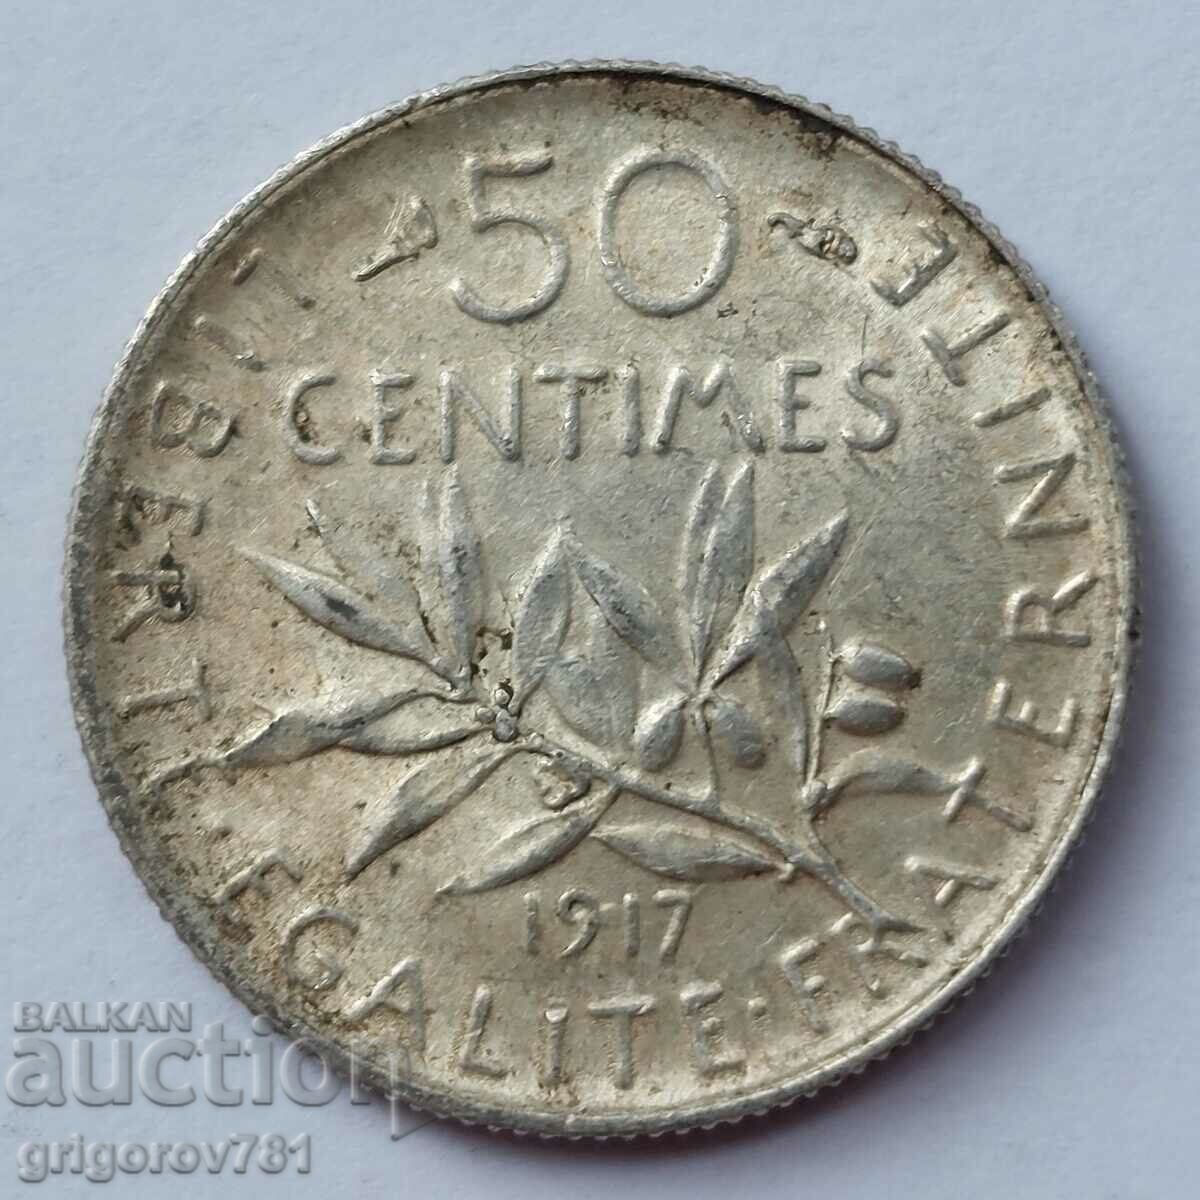 Ασημένιο 50 εκατοστά Γαλλία 1917 - ασημένιο νόμισμα №43